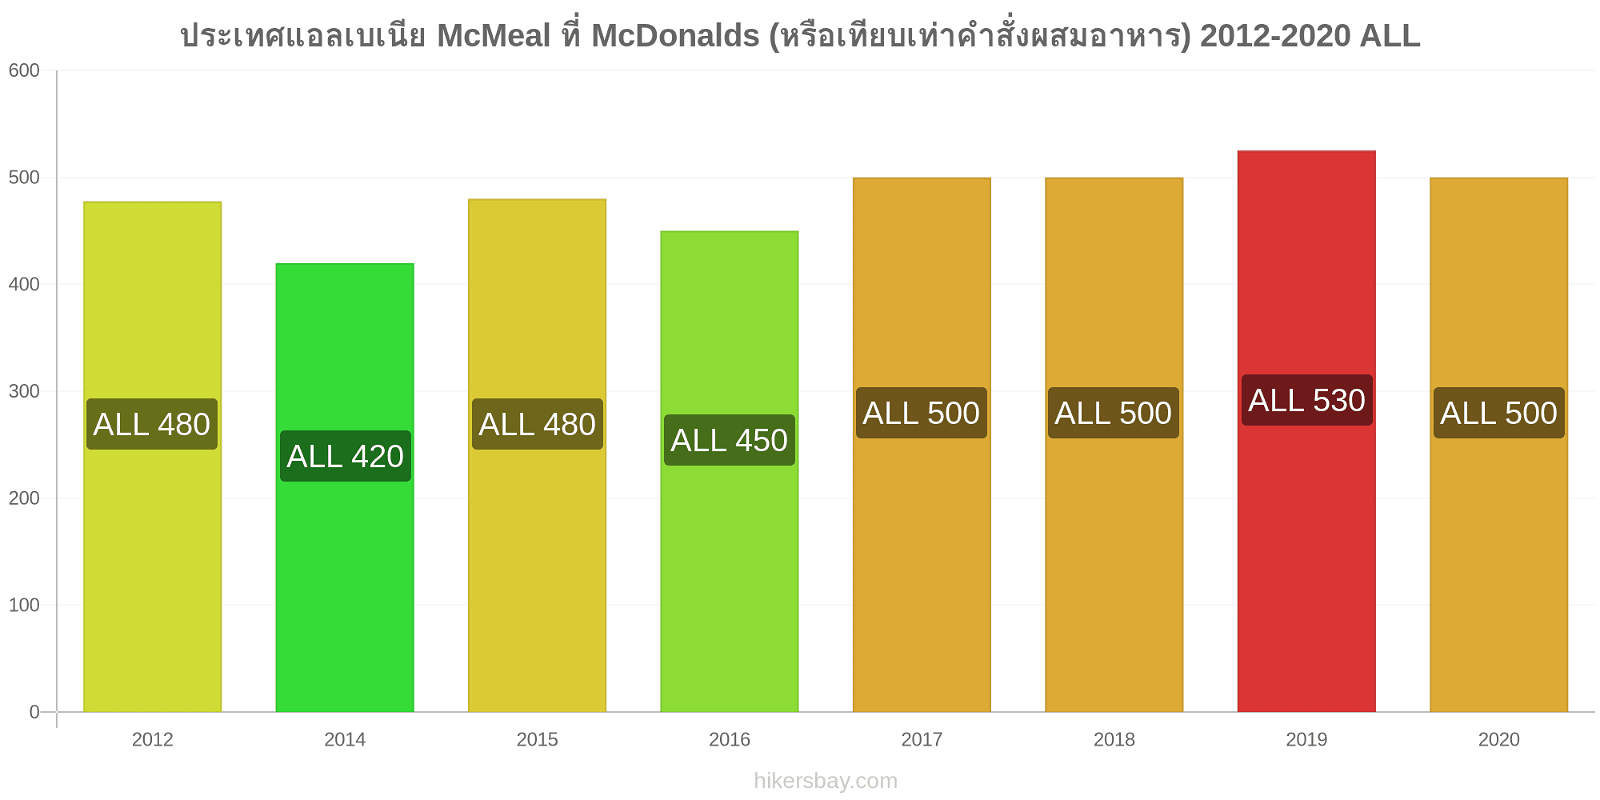 ประเทศแอลเบเนีย การเปลี่ยนแปลงราคา McMeal ที่ McDonalds (หรือเทียบเท่าคำสั่งผสมอาหาร) hikersbay.com